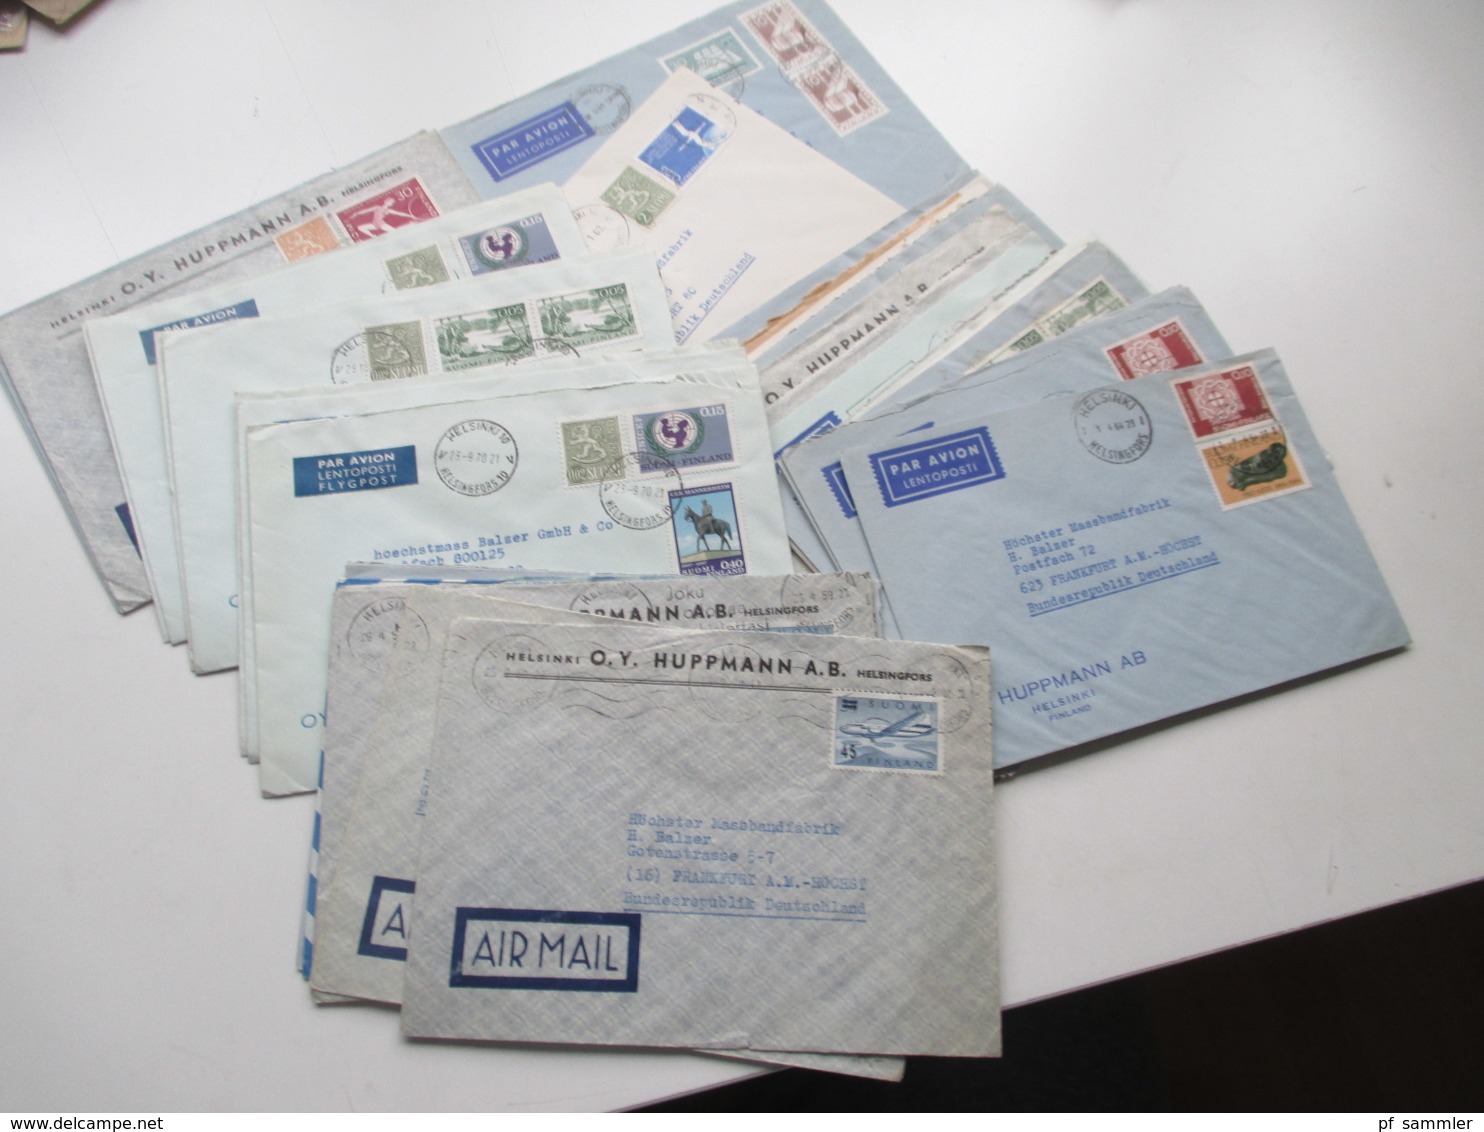 Finnland 1958 - 74 Luftpost Briefe 42 Stk. Firmen Korrespondenz Auch Freimarke Nr. 505 Flugzeug Mit Aufdruck Usw. - Briefe U. Dokumente